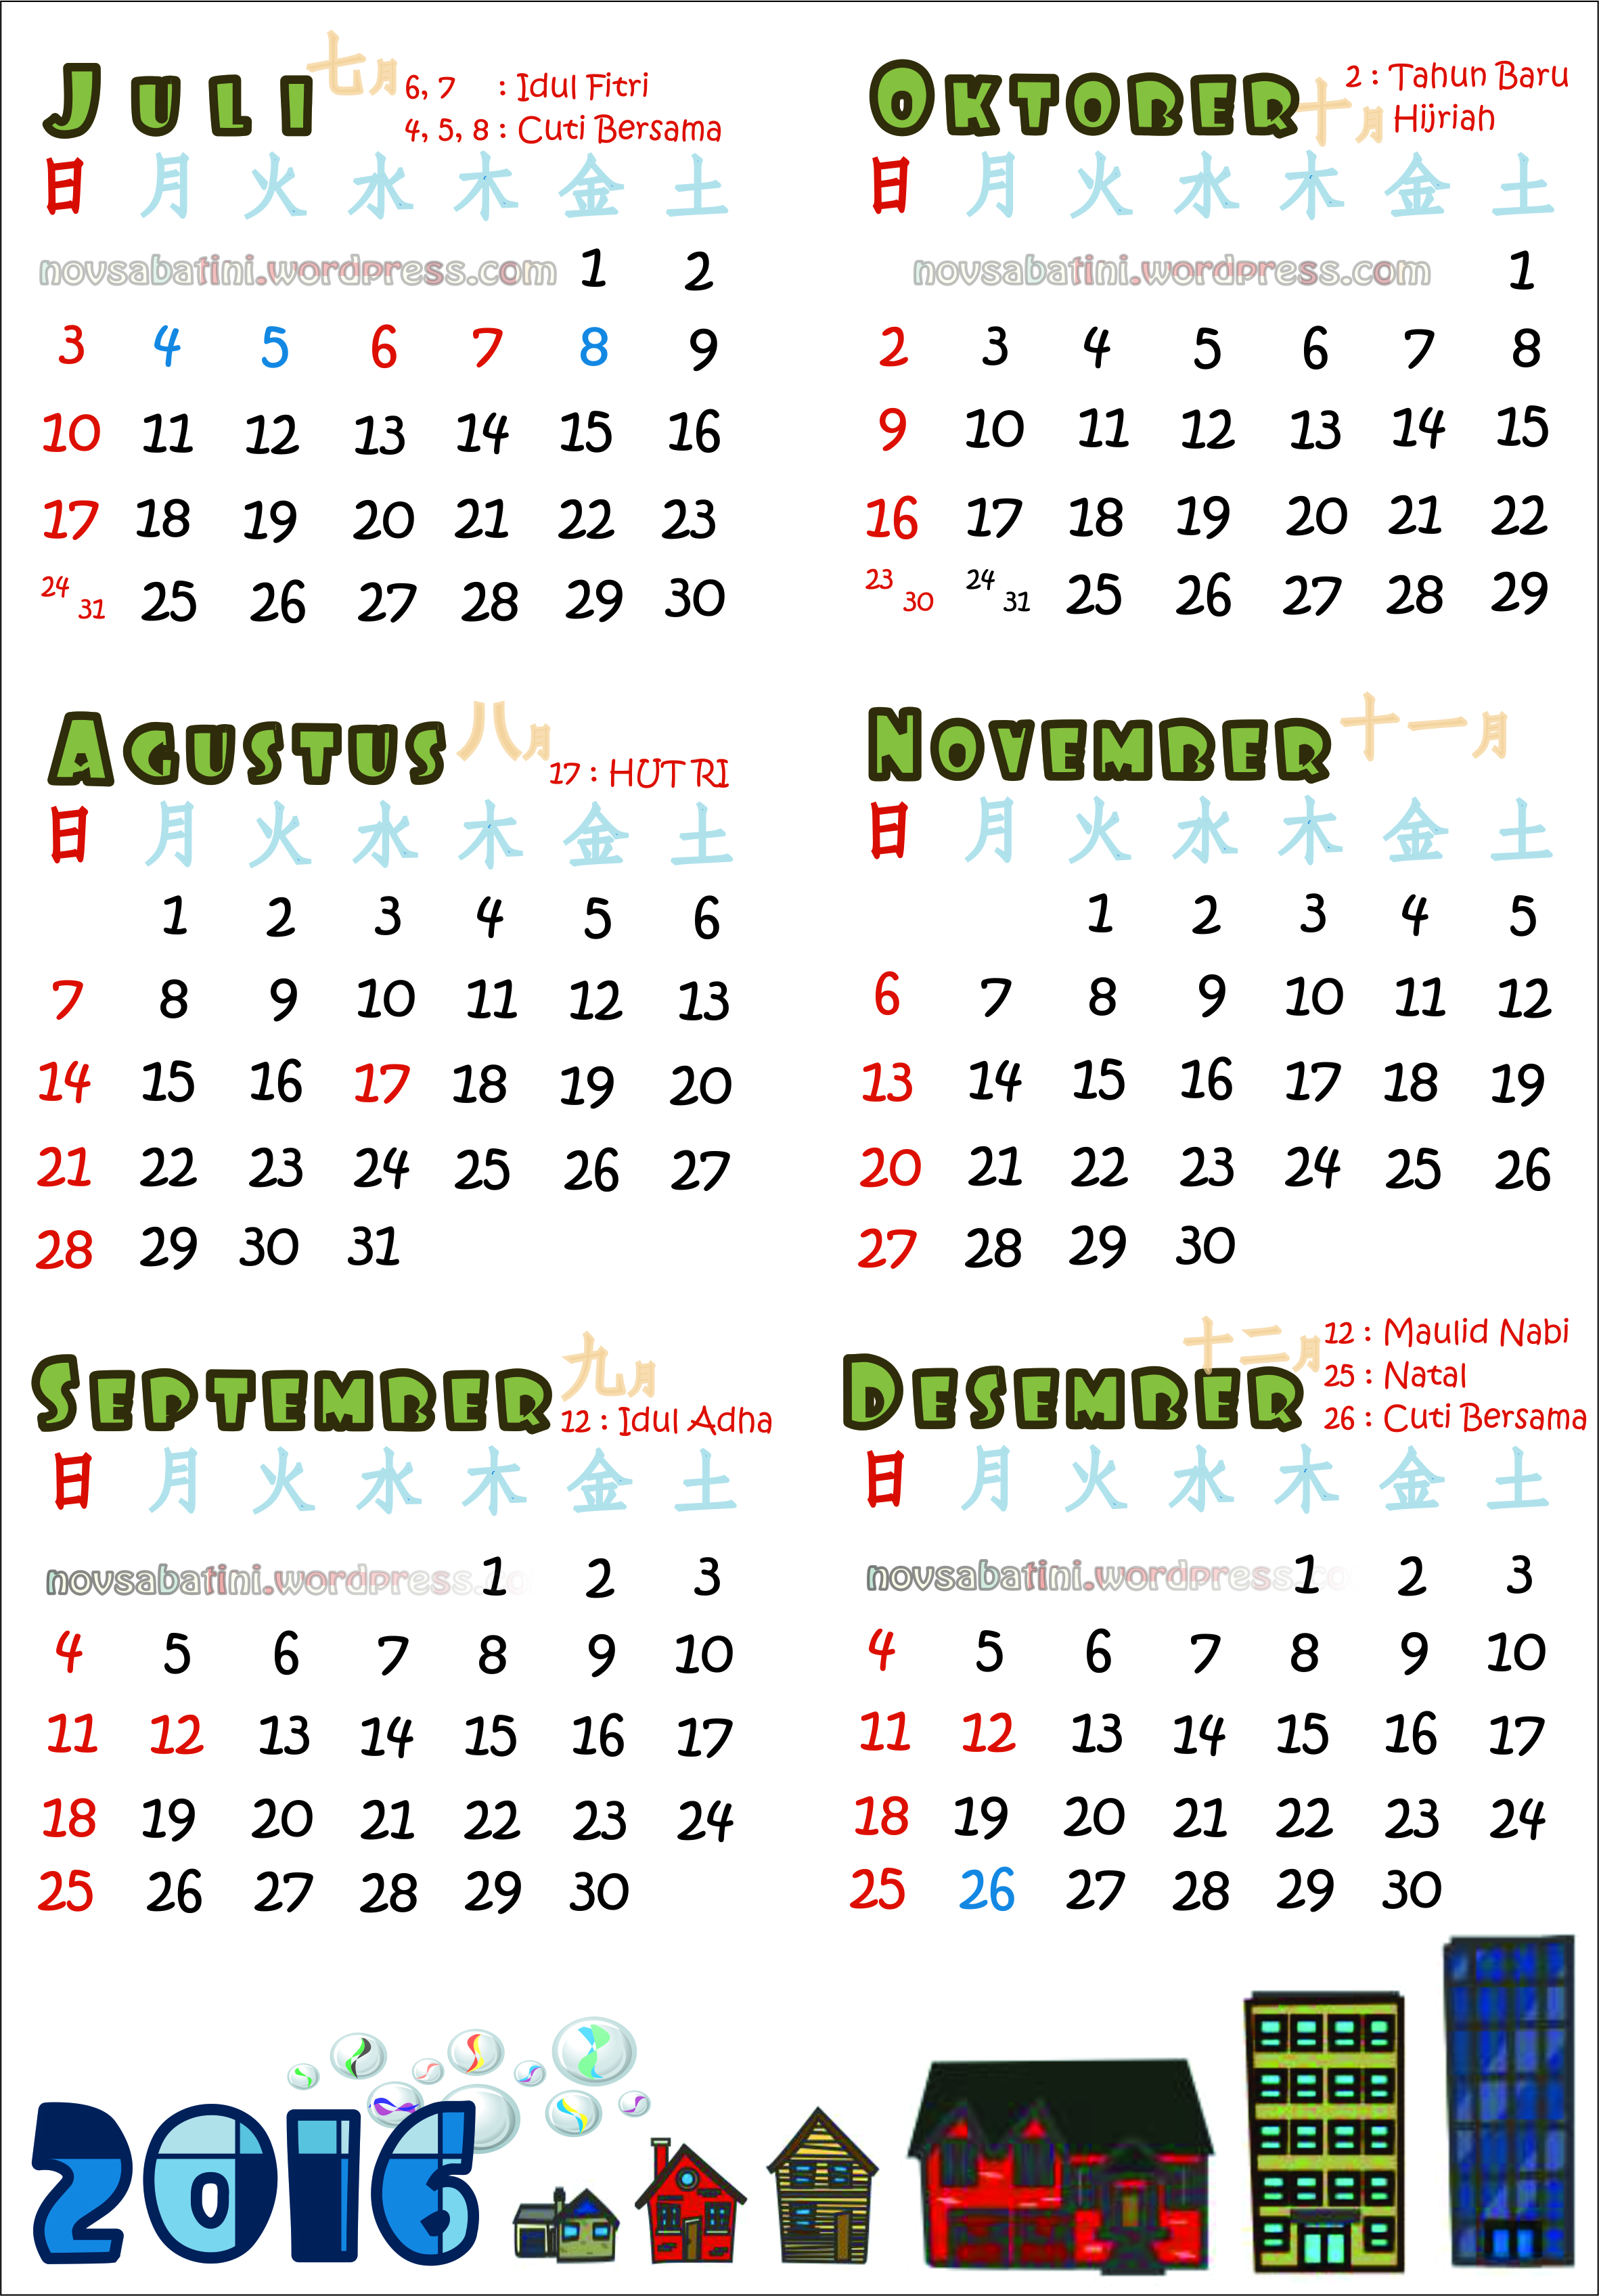 Wallpaper Kalender Gambar Bunga November 2015 Gudang Wallpaper